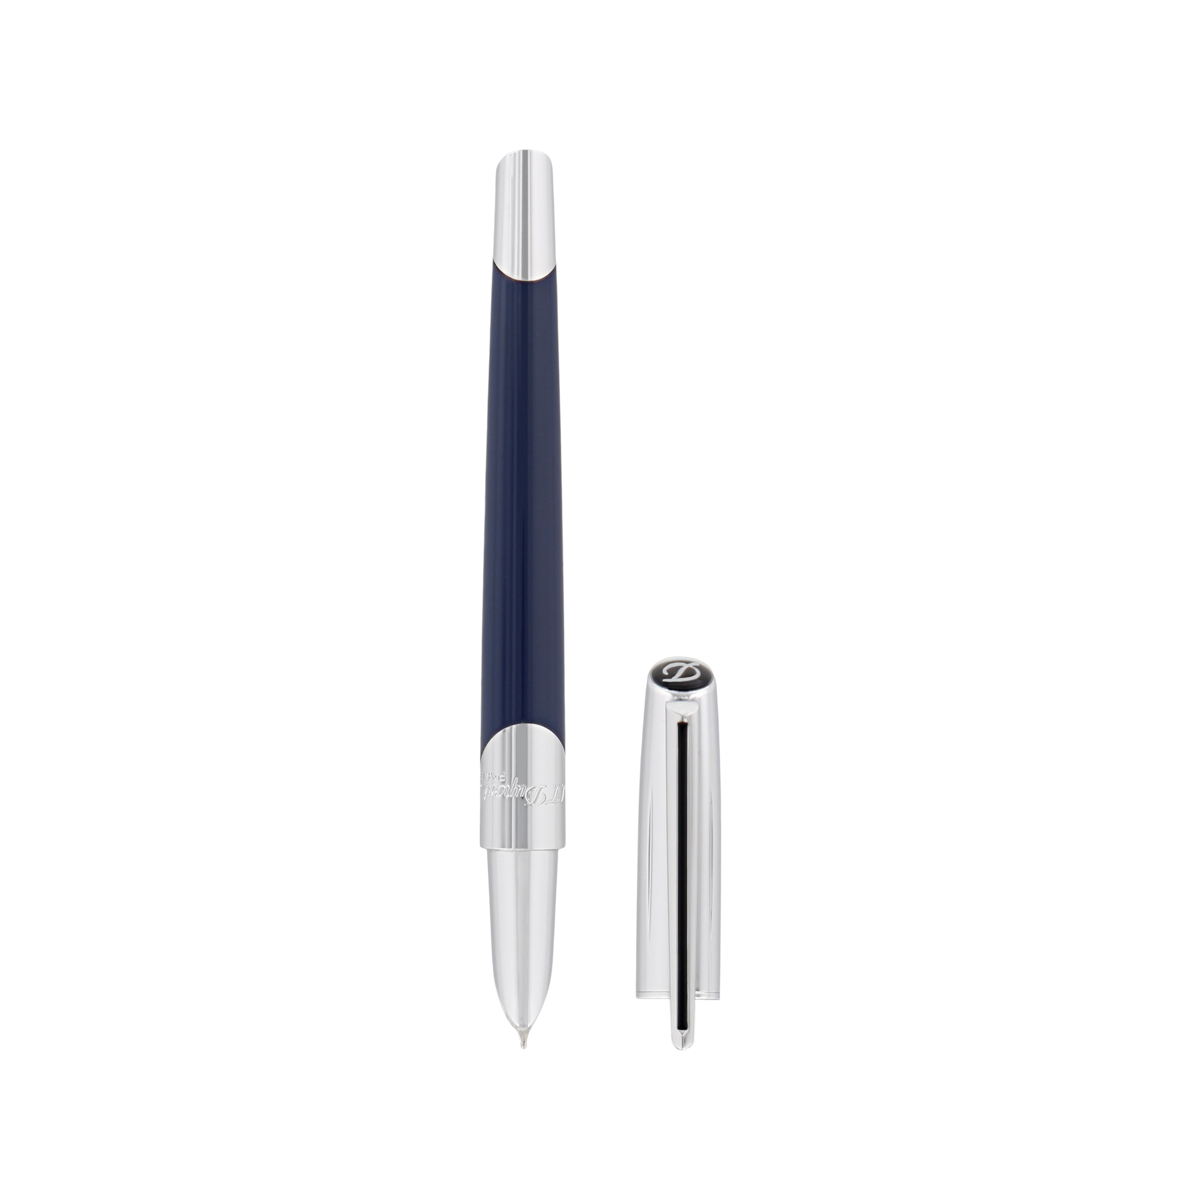 Перьевая ручка Defi Millenium 400736 Цвет Синий Отделка лаком и хромом | S.T. Dupont